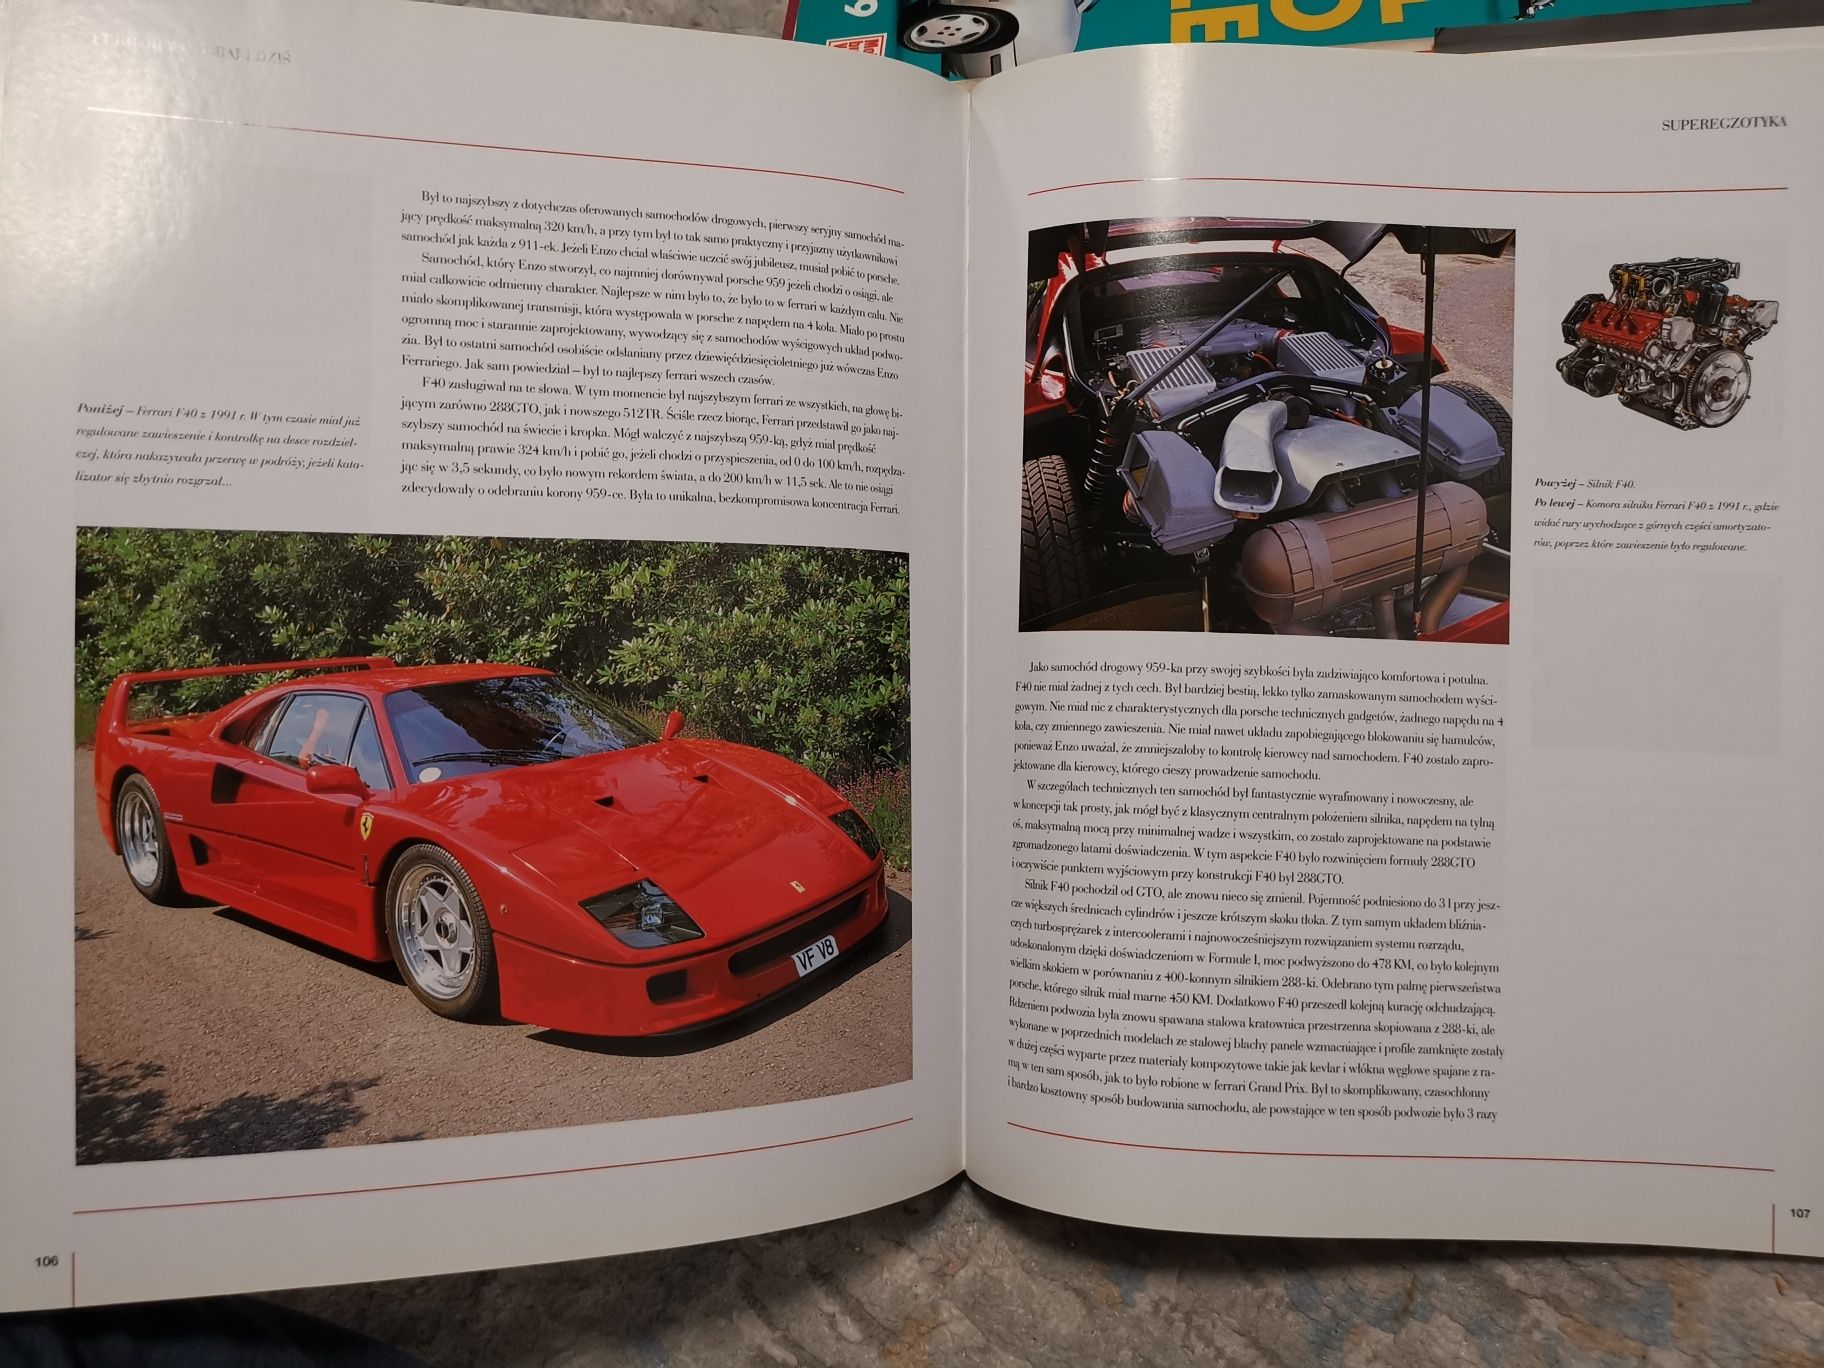 Książka Ferrari Wczoraj i dziś - dla fana motoryzacji